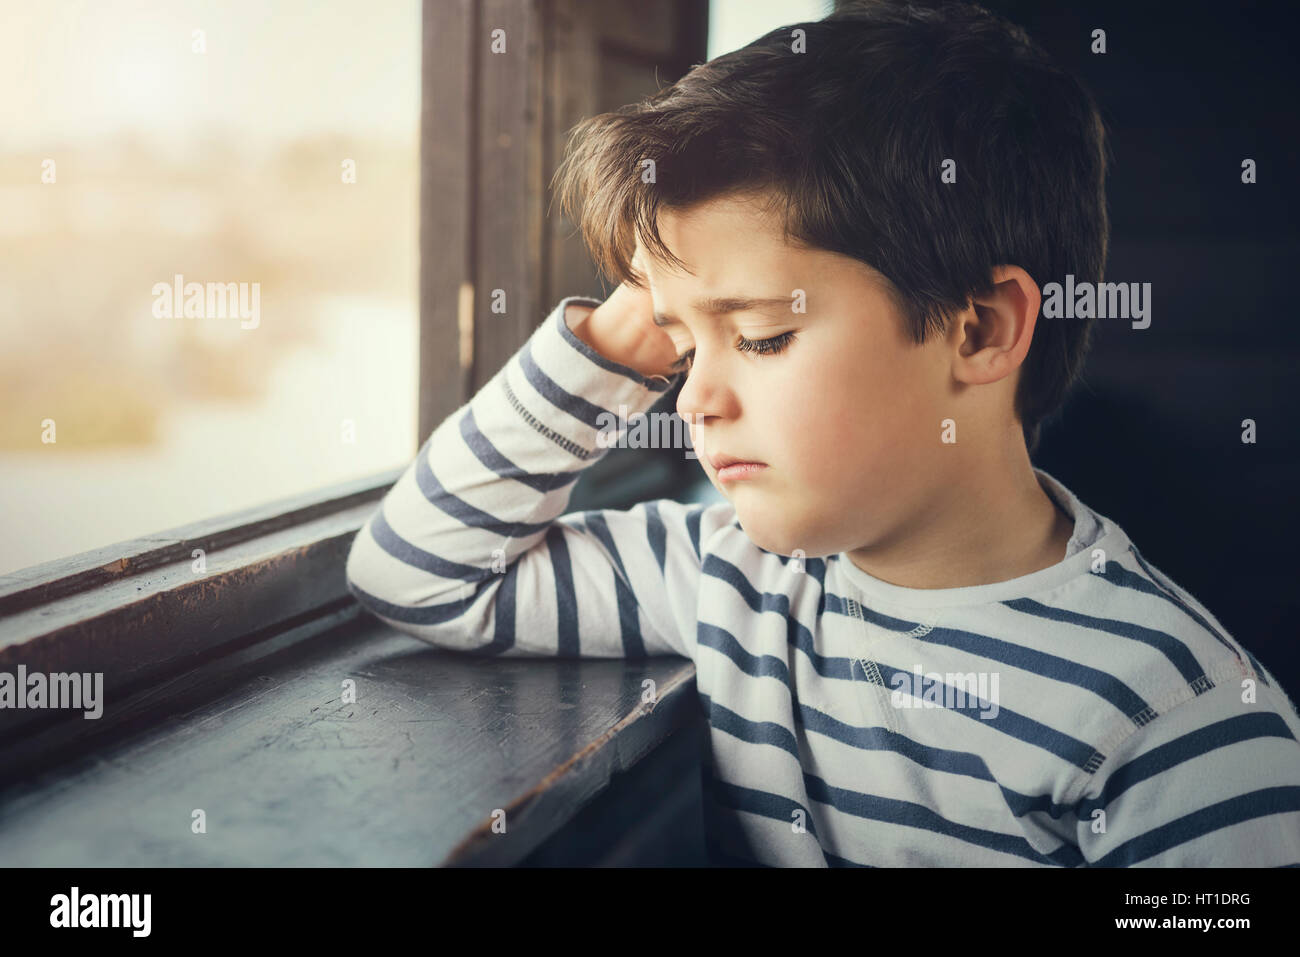 Traurige junge neben einem Fenster Stockfoto